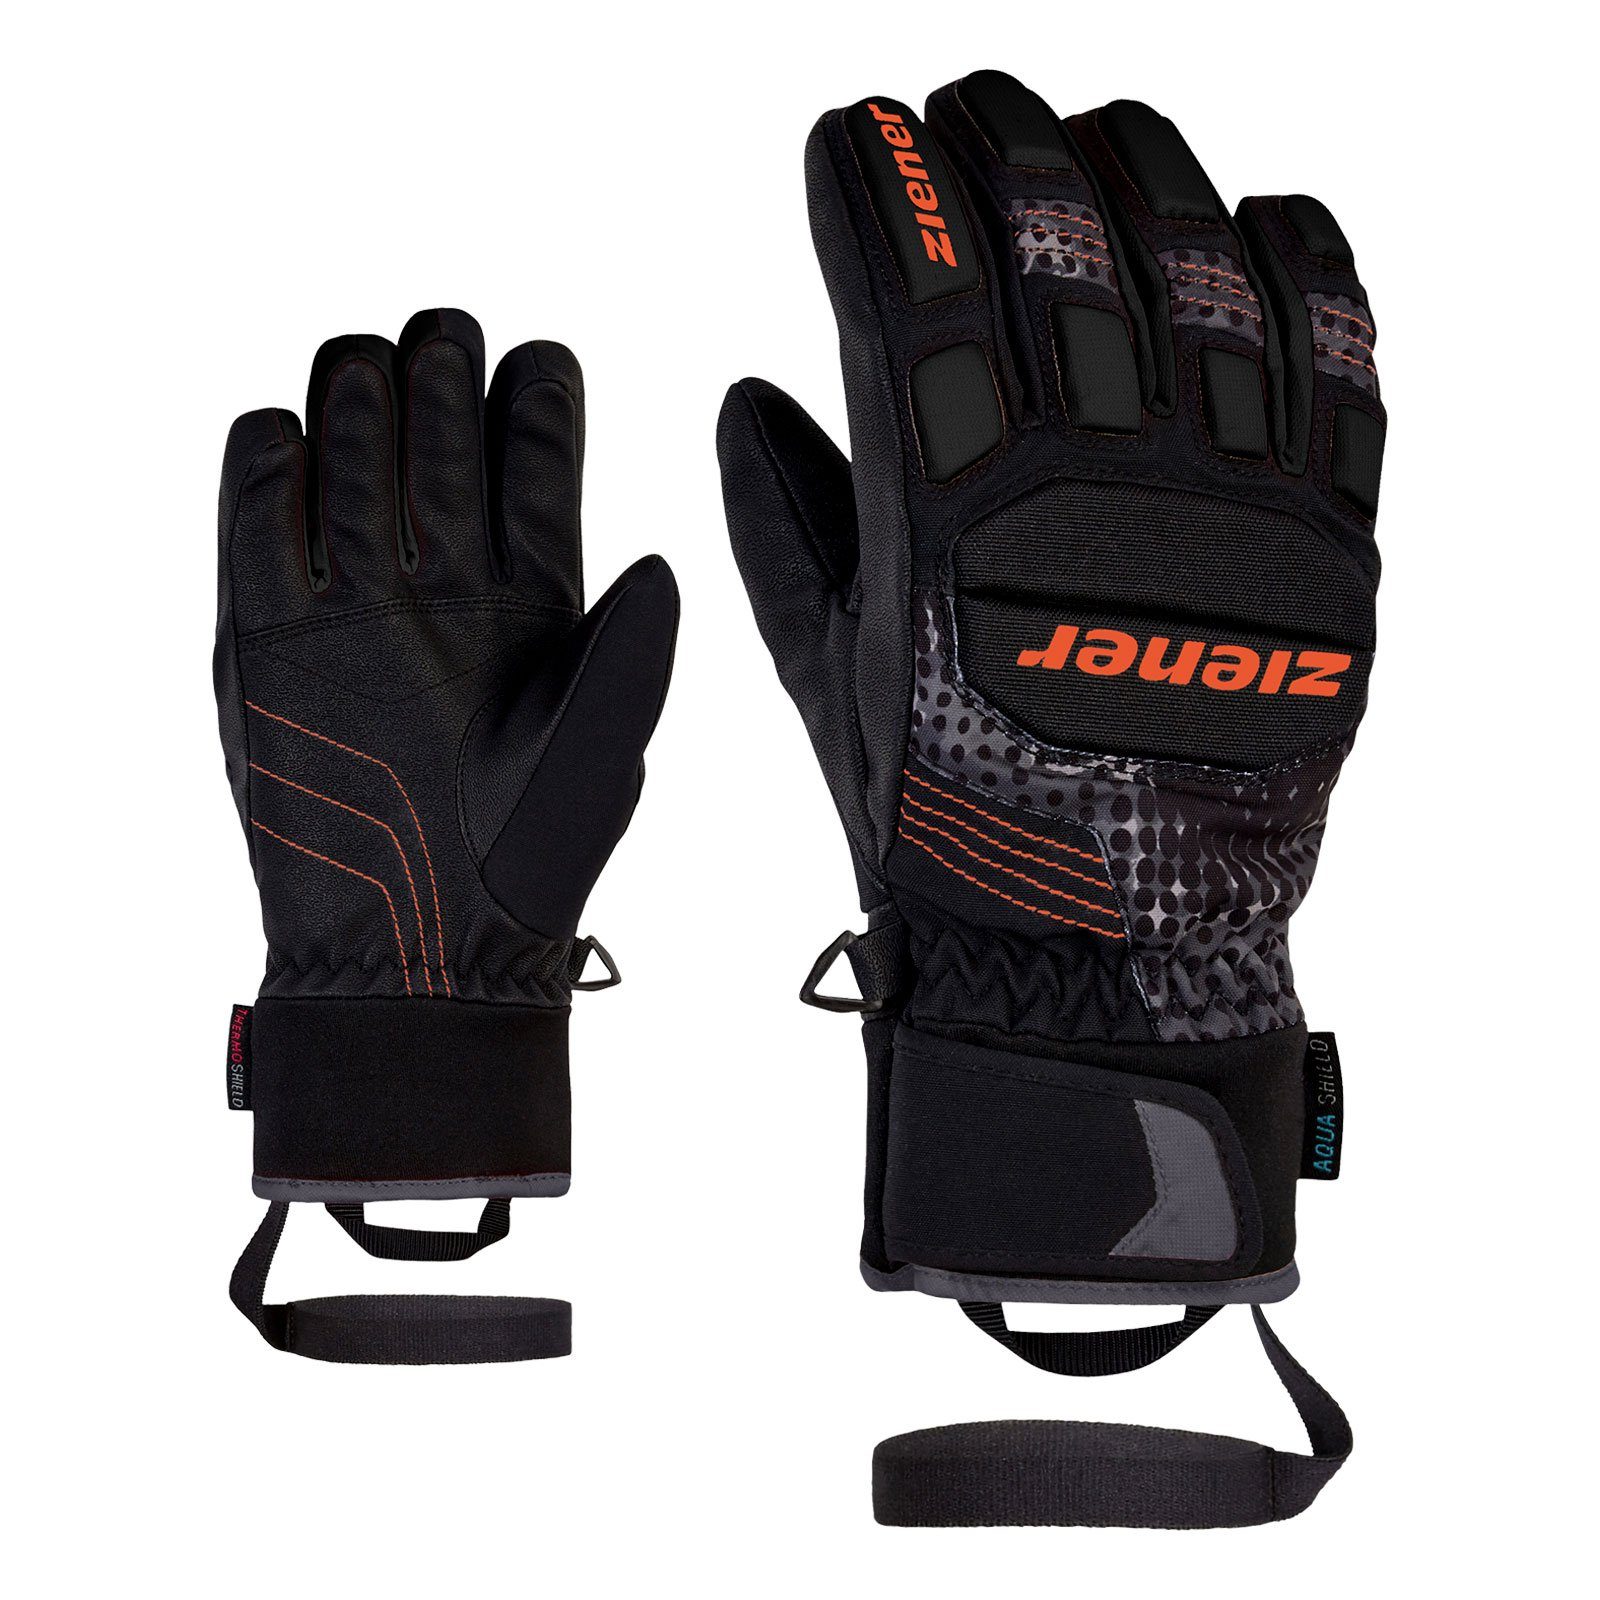 Ziener Skihandschuhe Luro AS PR Glove junior mit aufgedrucktem Markenlogo